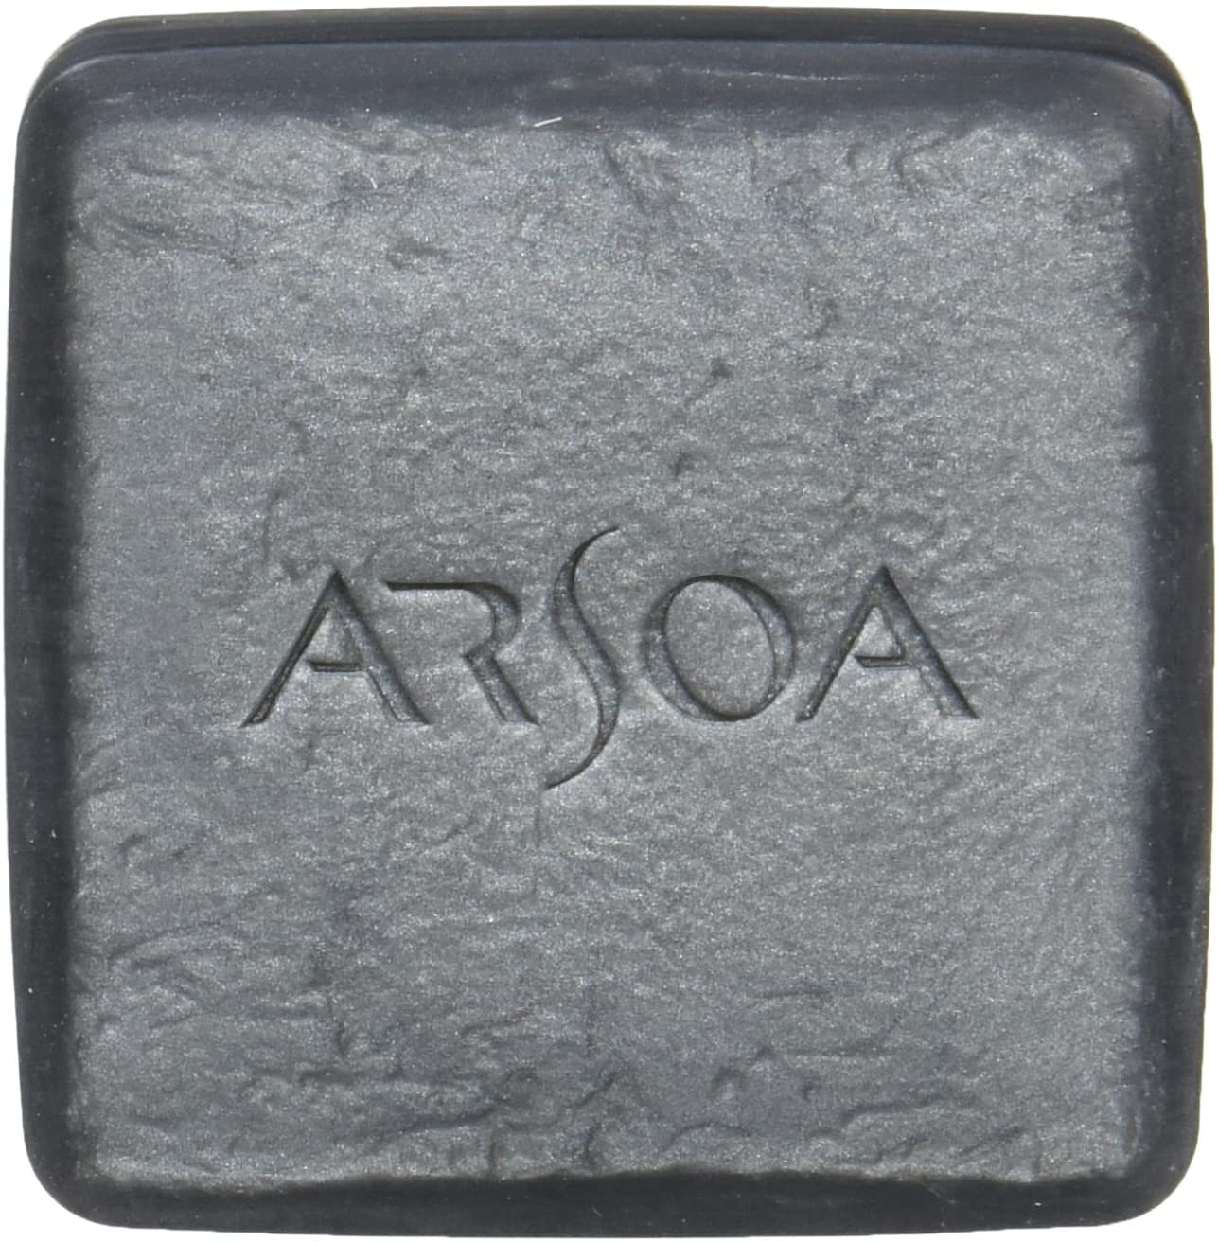 ARSOA(アルソア) クイーンシルバーの商品画像3 